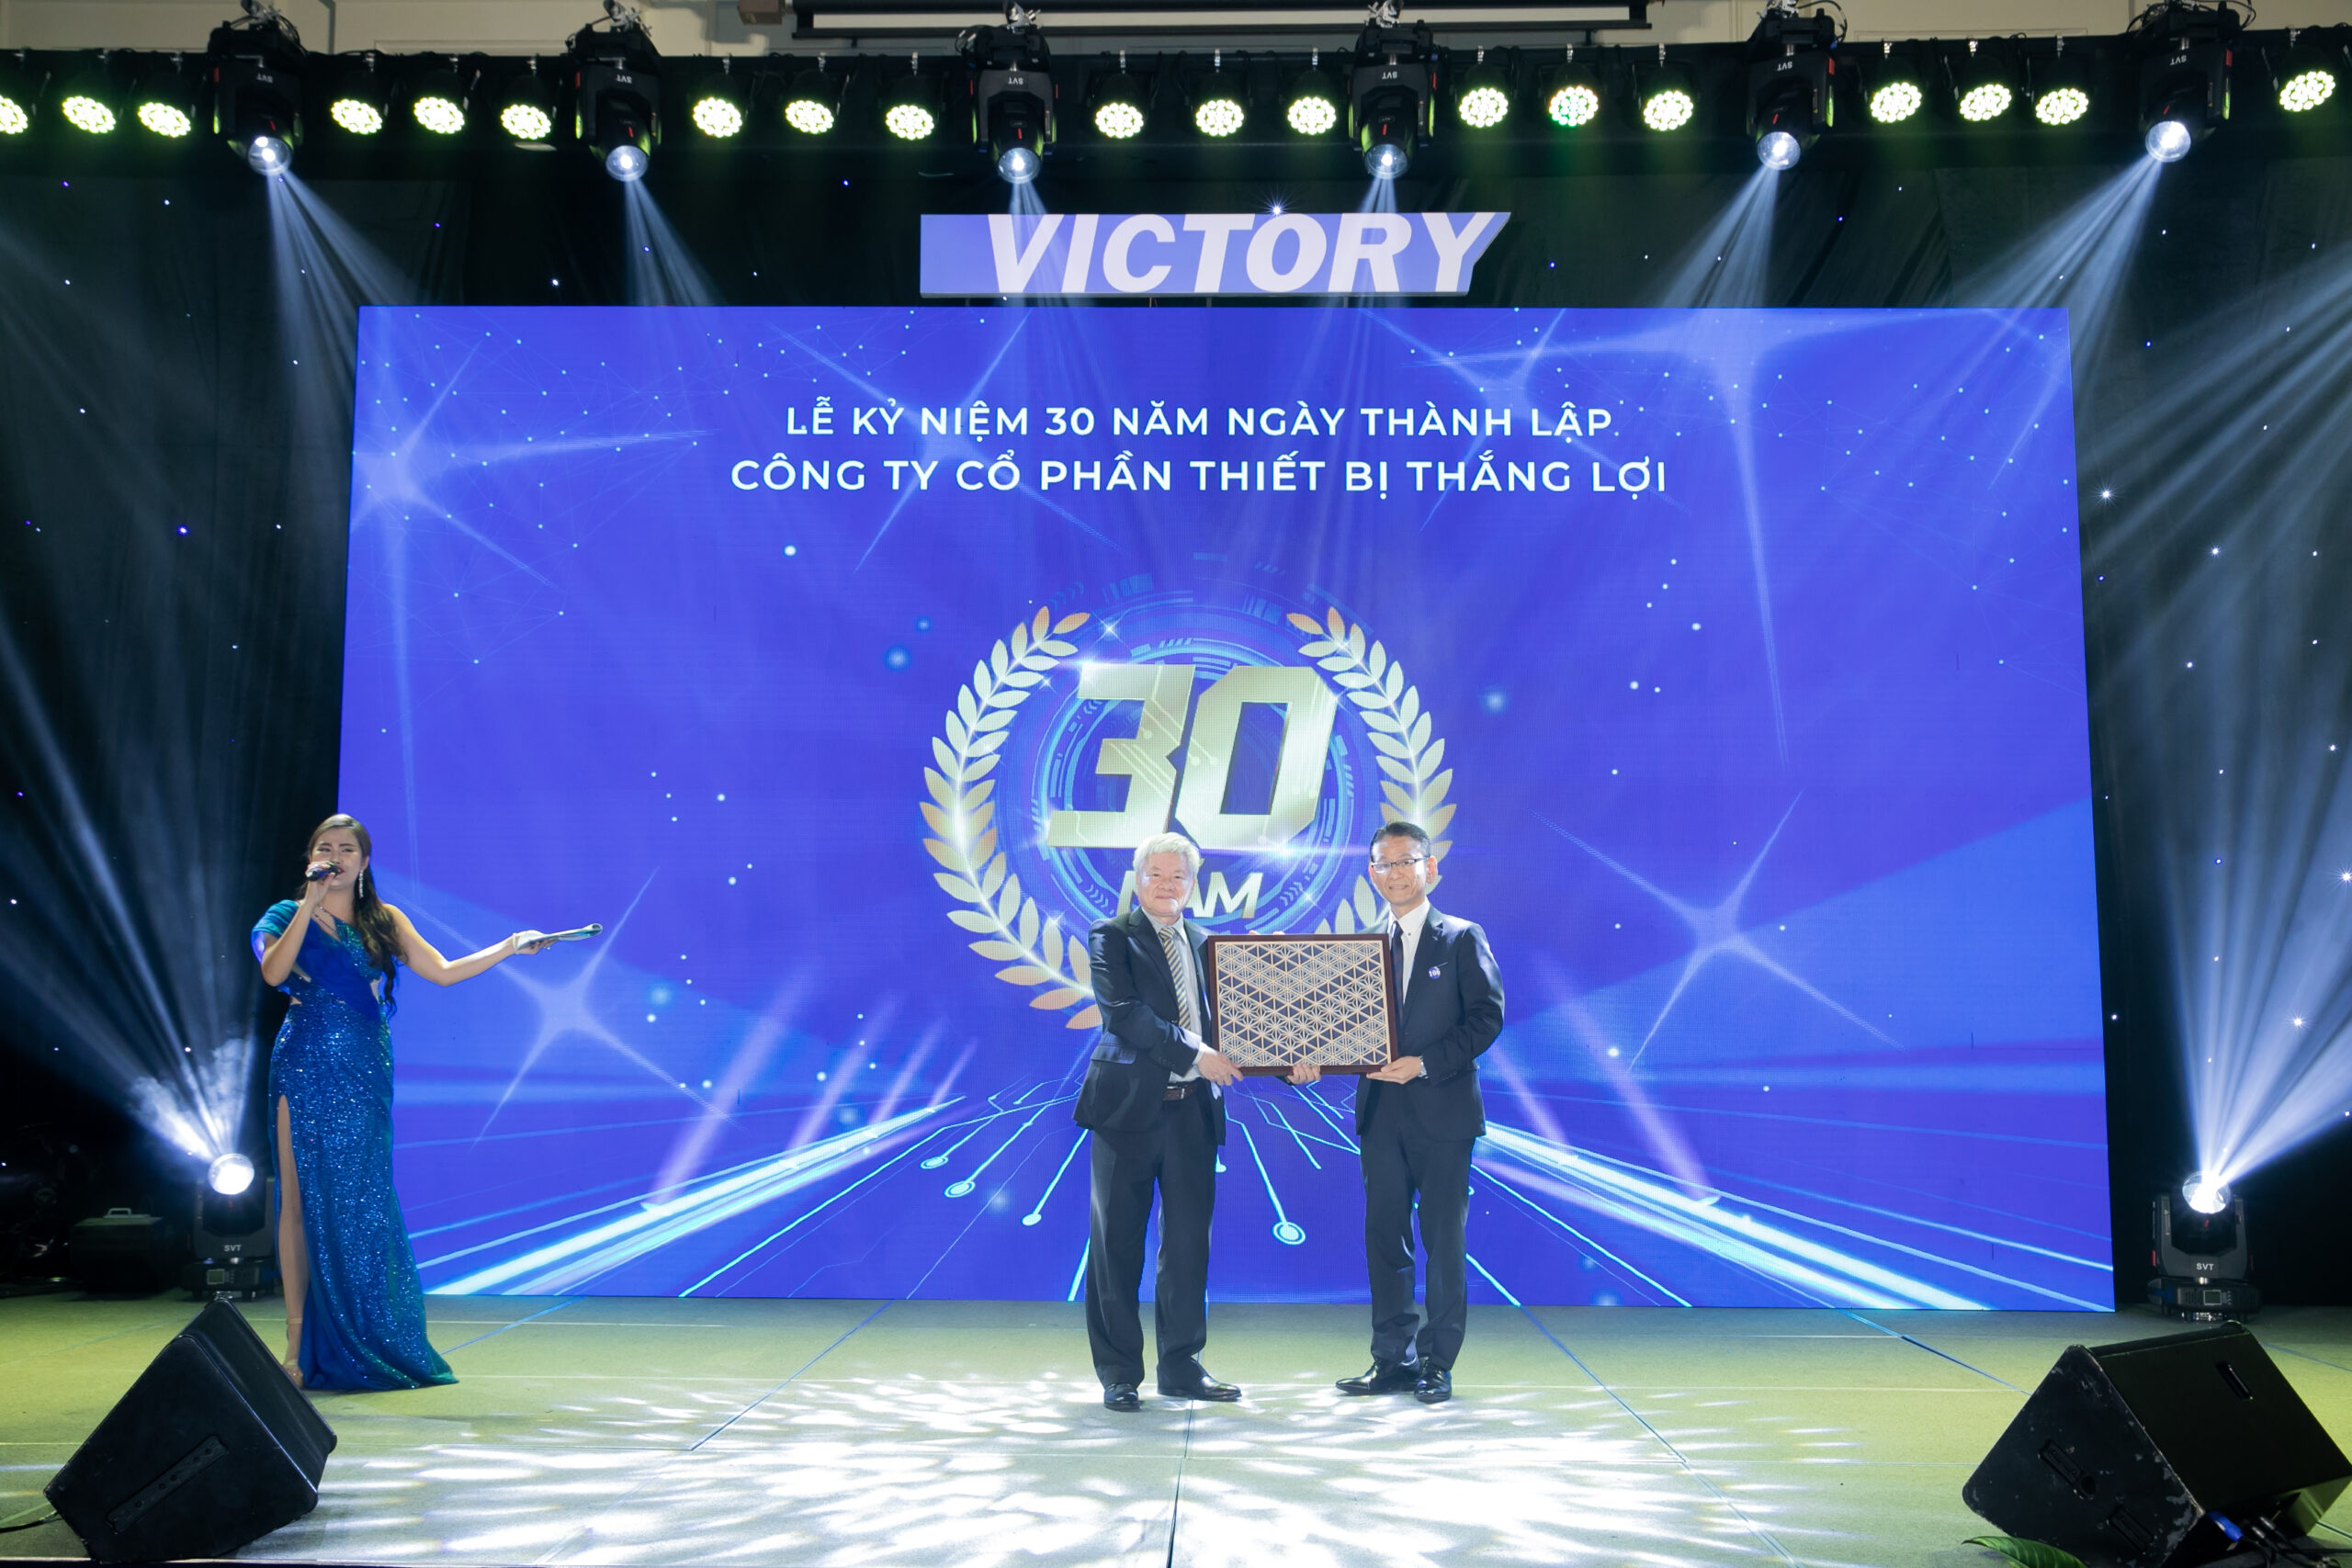 Chủ tịch công ty thắng lợi - Nguyễn Trọng Khôi nhận quà lưu niệm từ tập đoàn Hioki tại buổi lễ kỉ niệm 30 năm thành lập